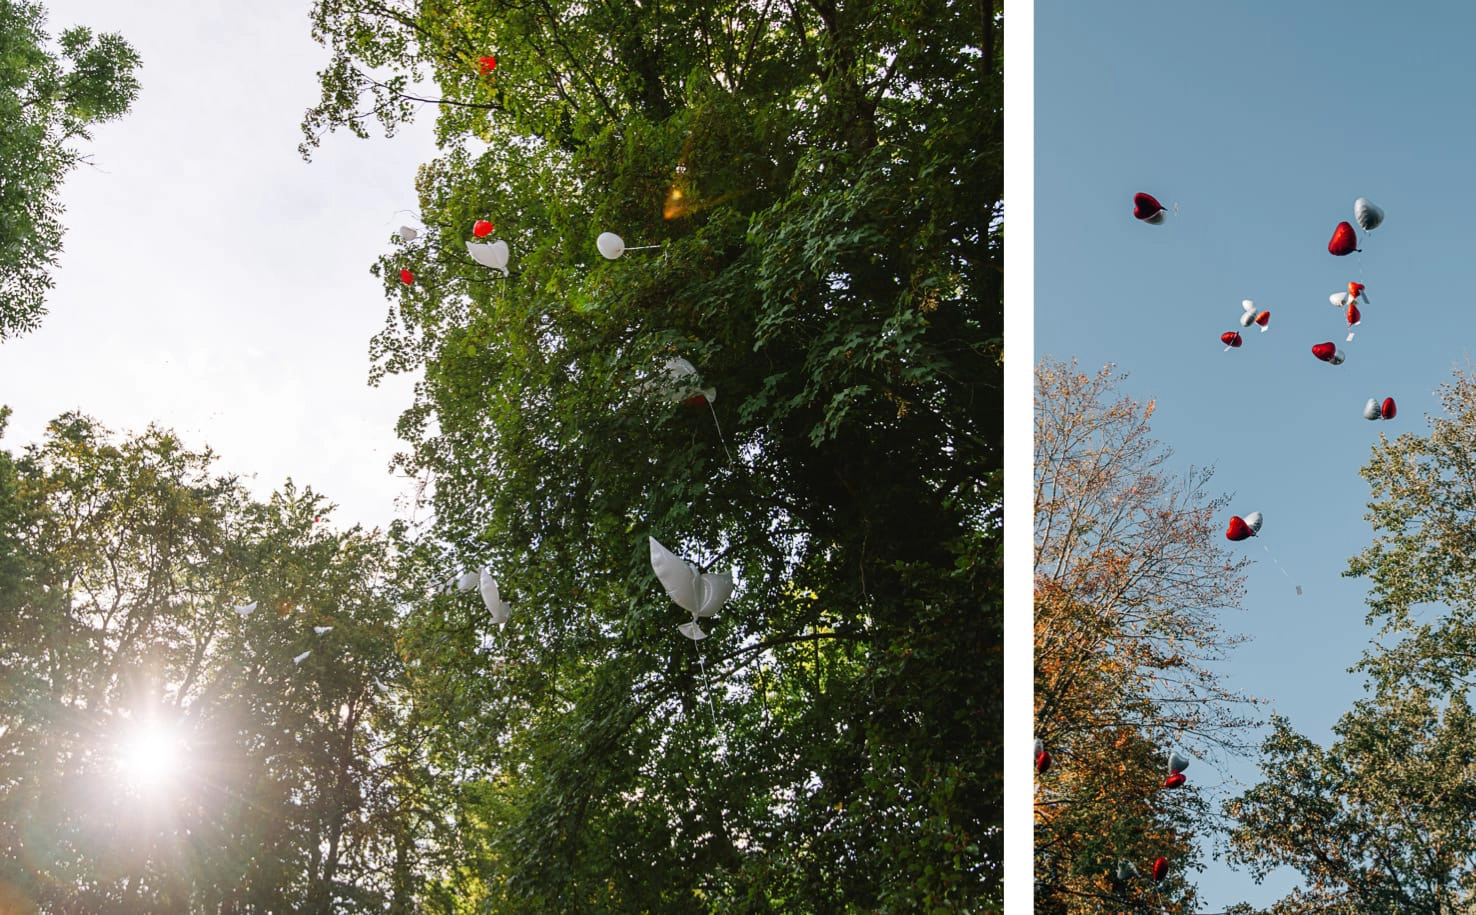 Hochzeitsguide Jung und Wild design: Luftballons steigen lassen